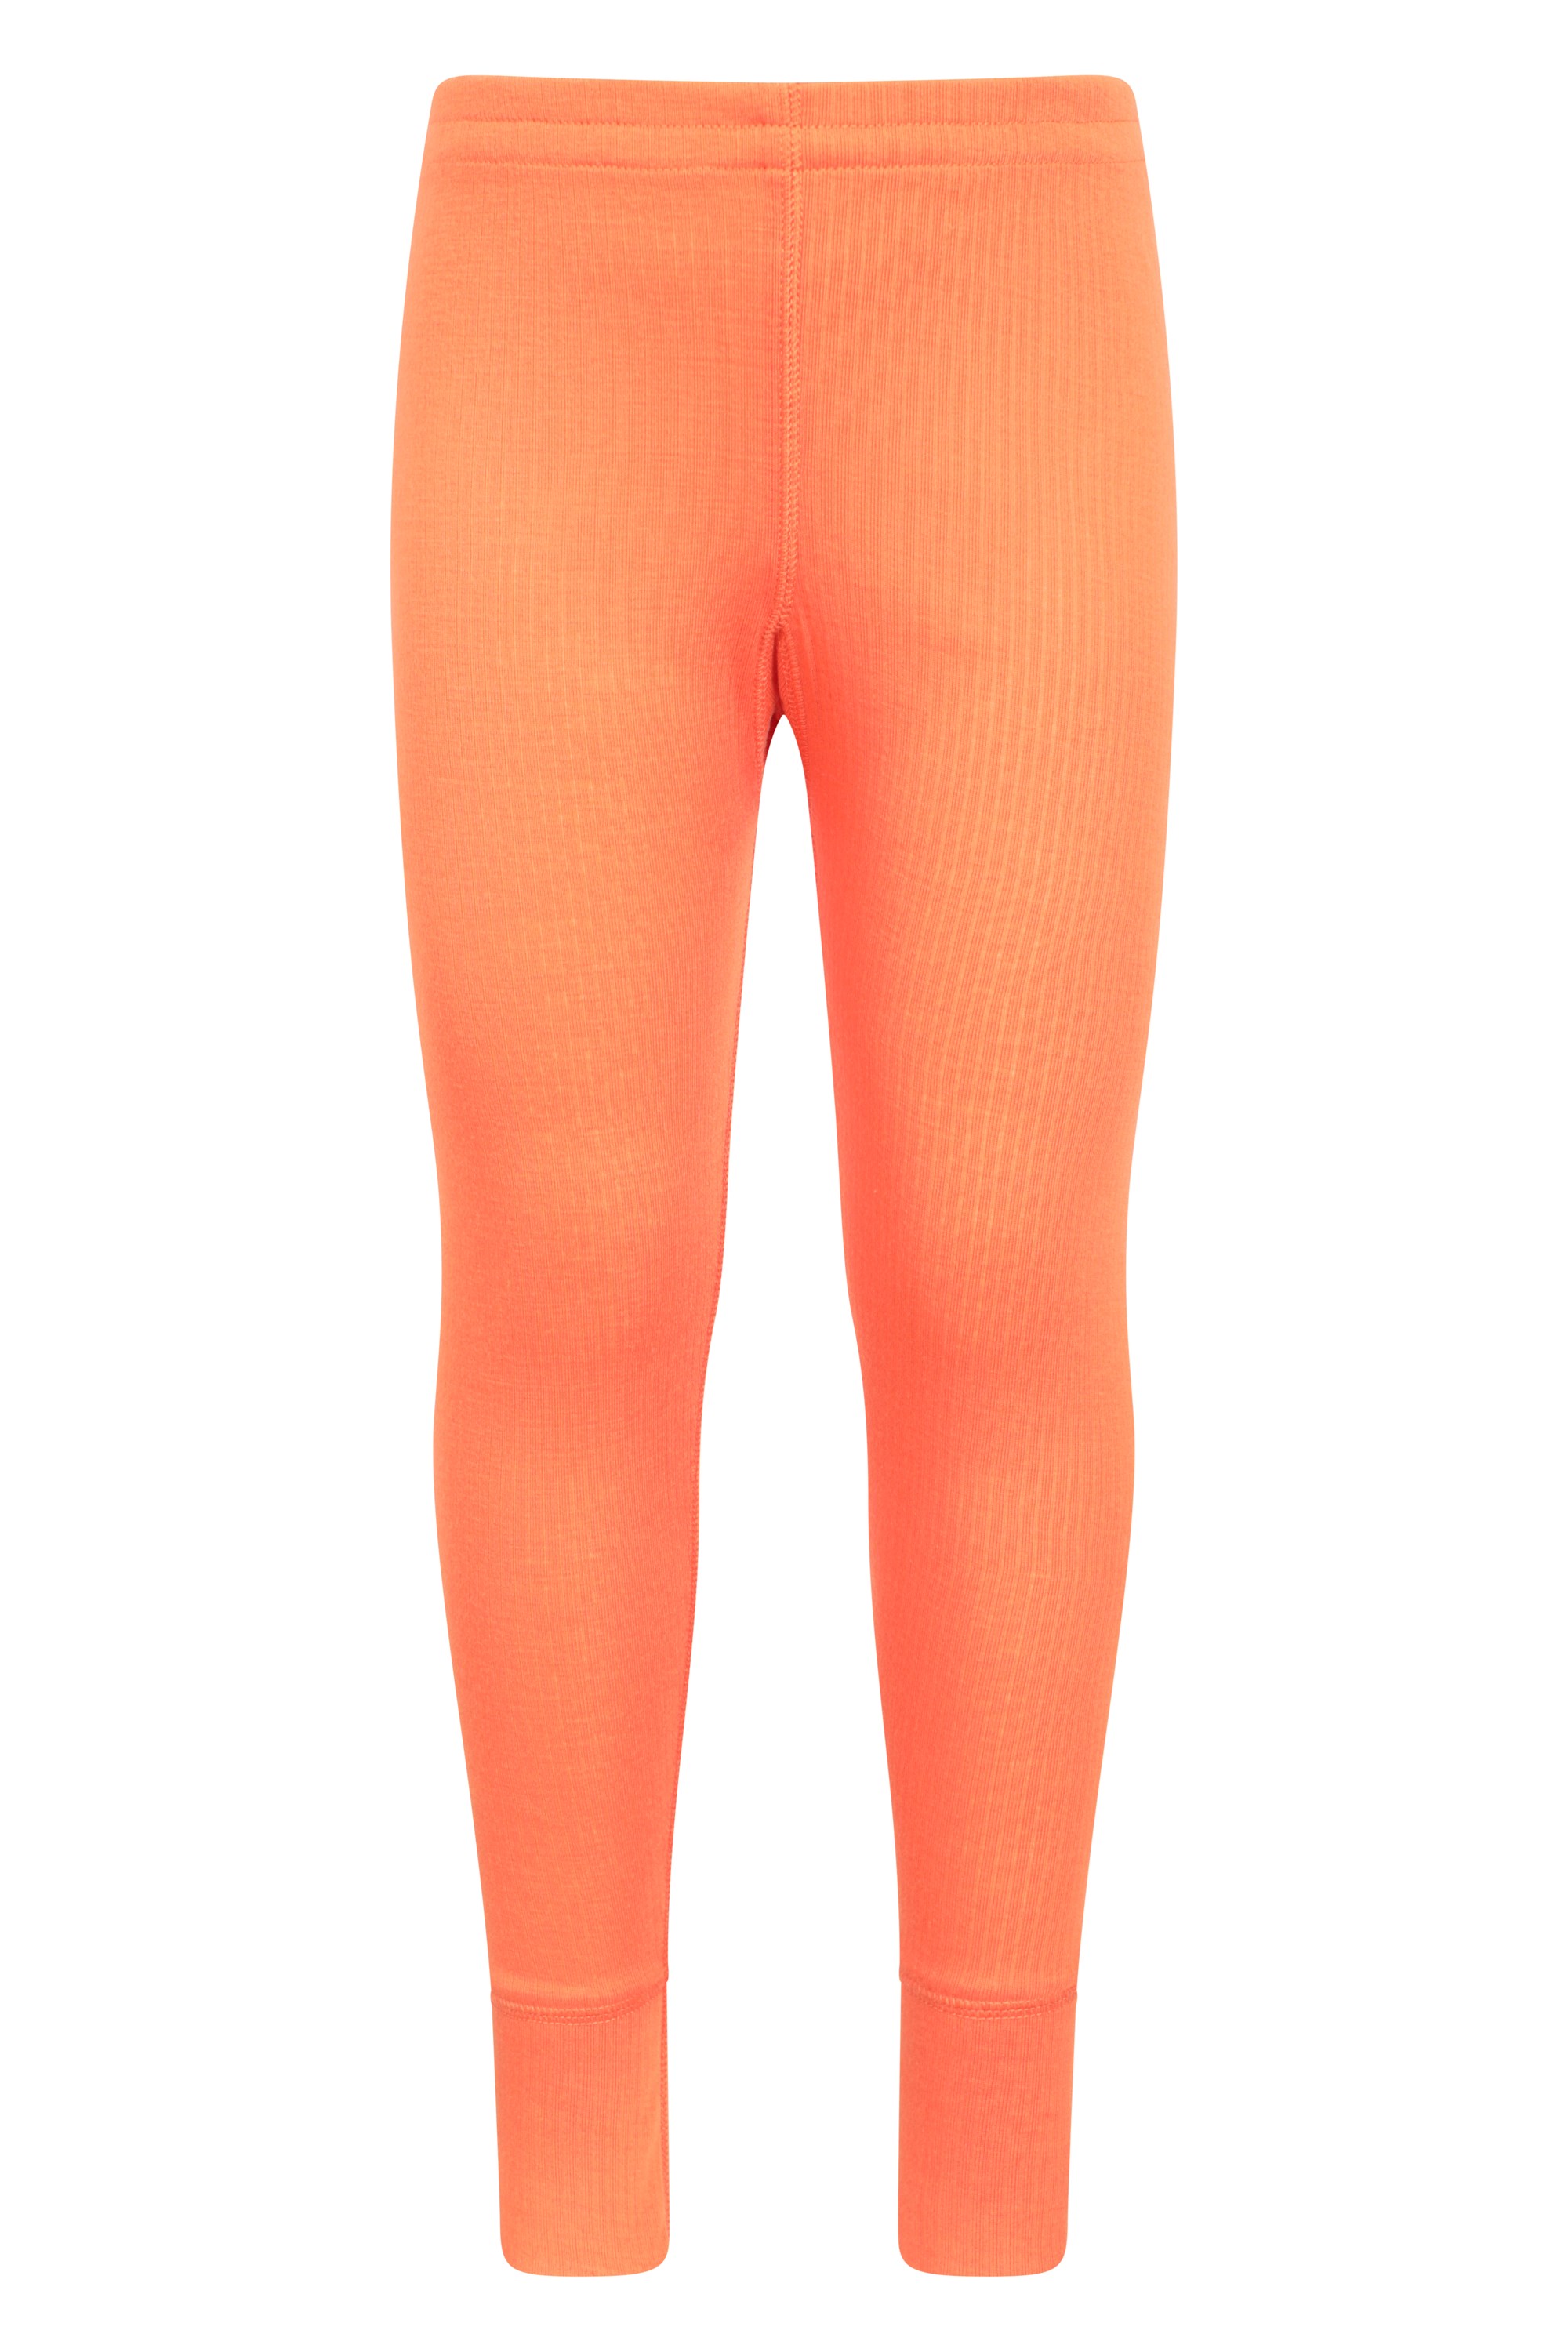 Talus Kids Base Layer Thermal Pants - Orange